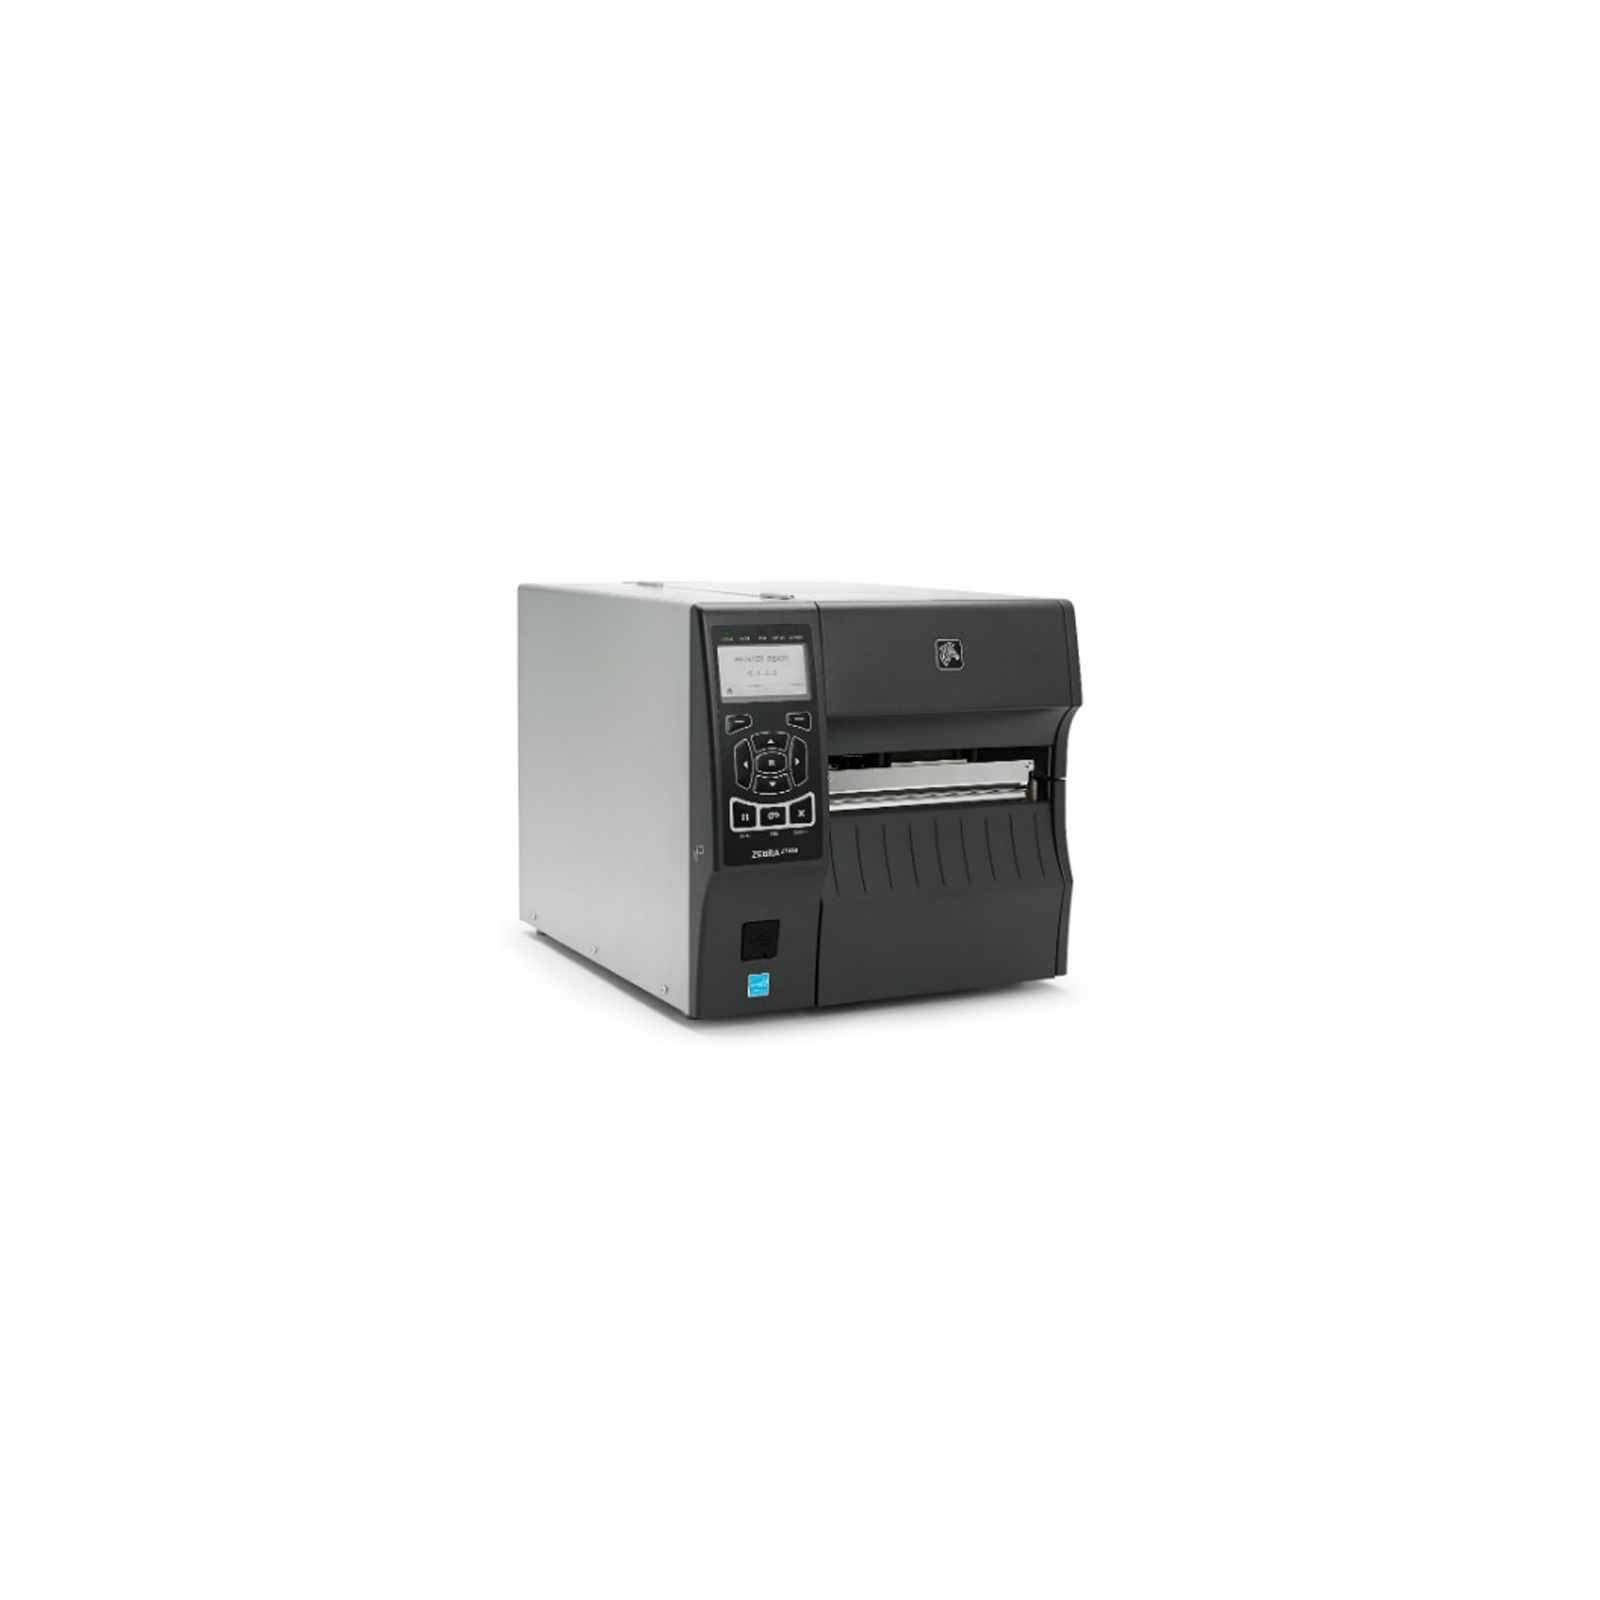 Принтер етикеток Zebra ZT410 203dpi (ZT41042-T0E0000Z) зображення 3